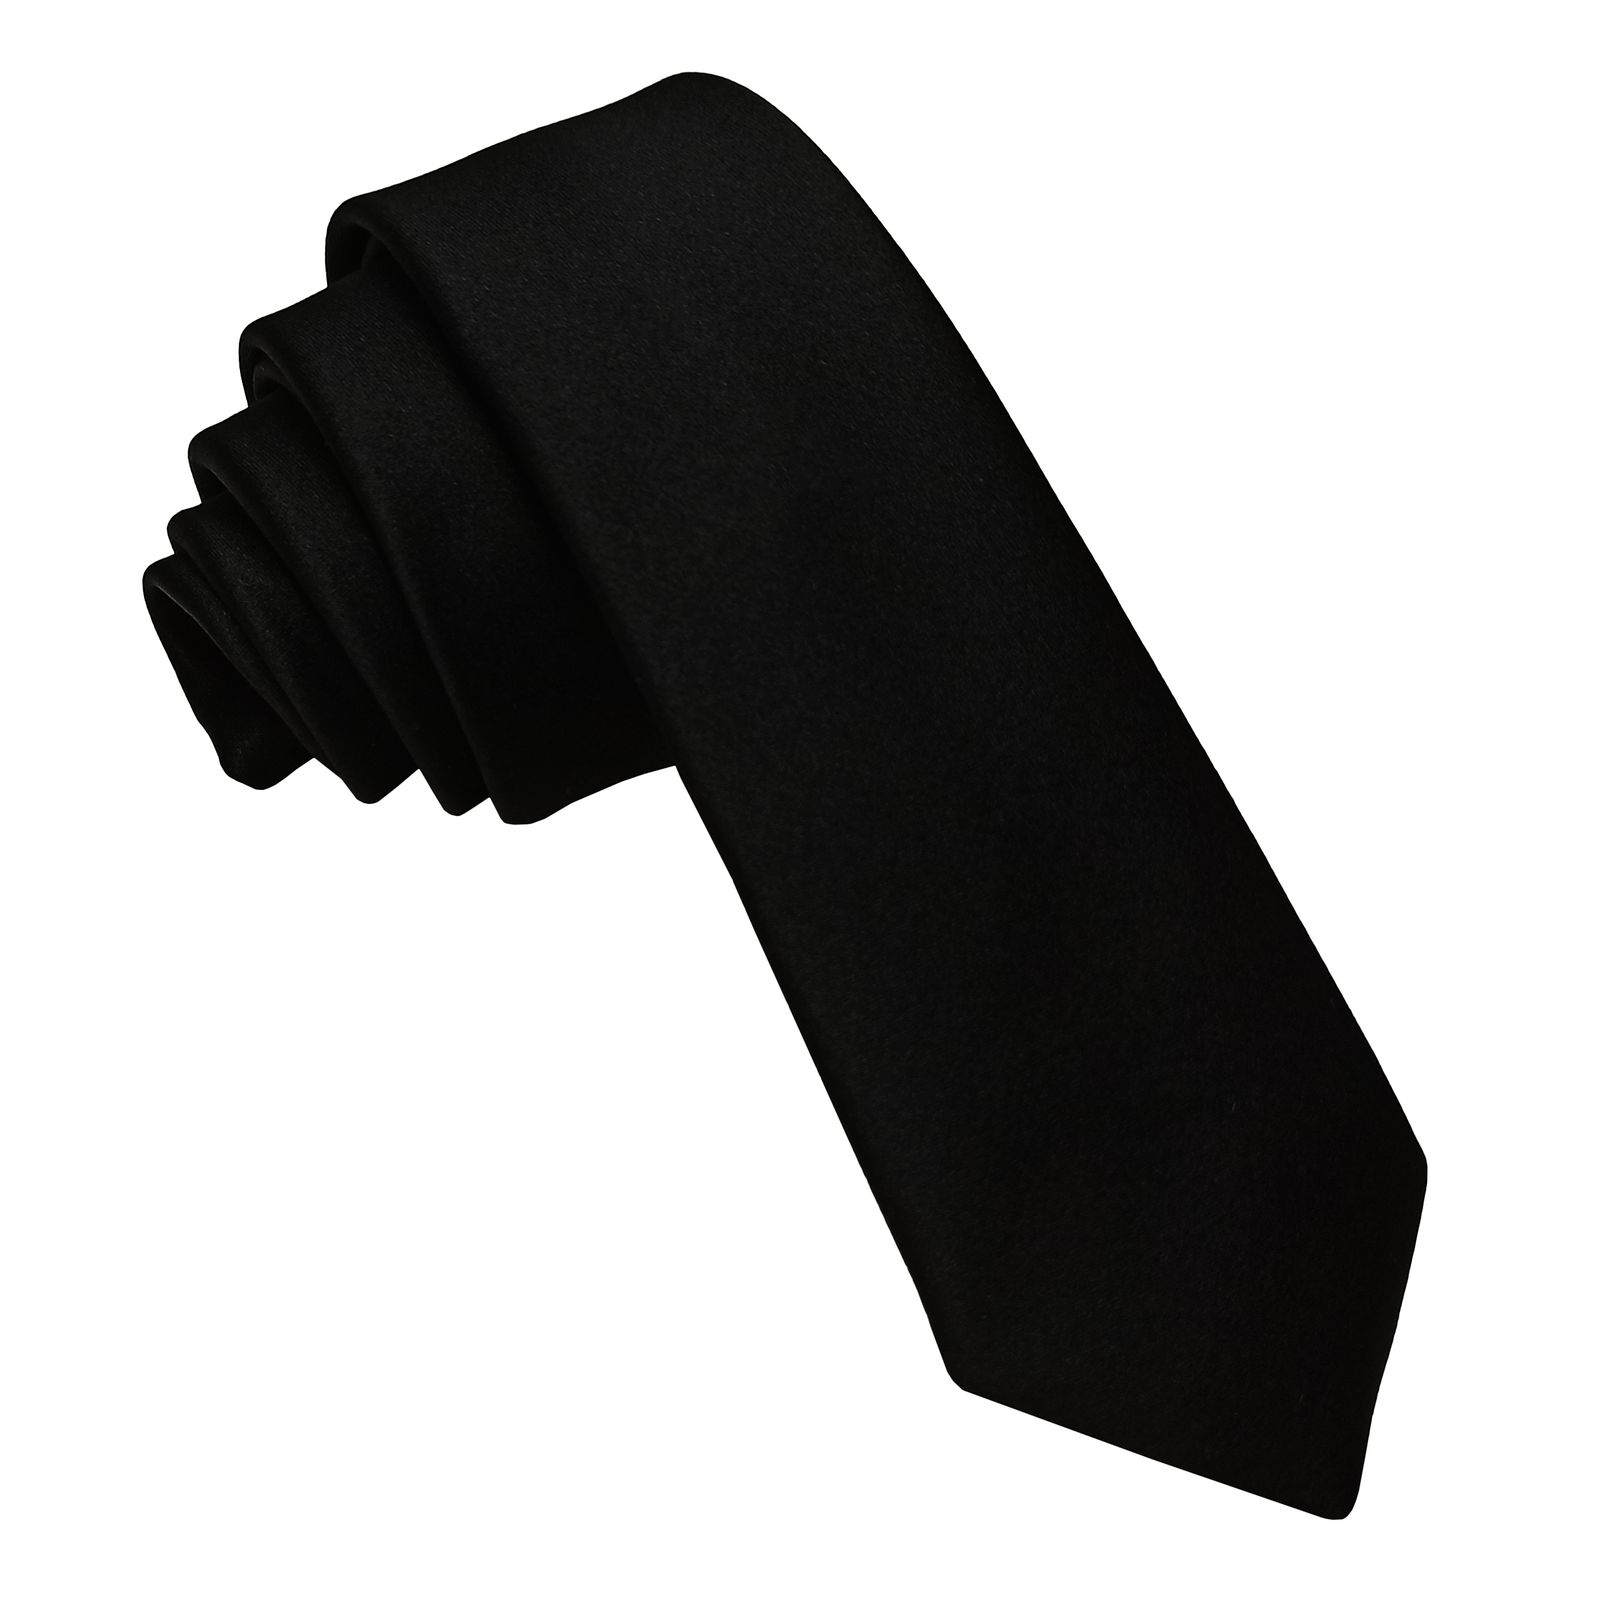  ست کراوات و پاپیون و دستمال جیب مردانه کد B3 -  - 8